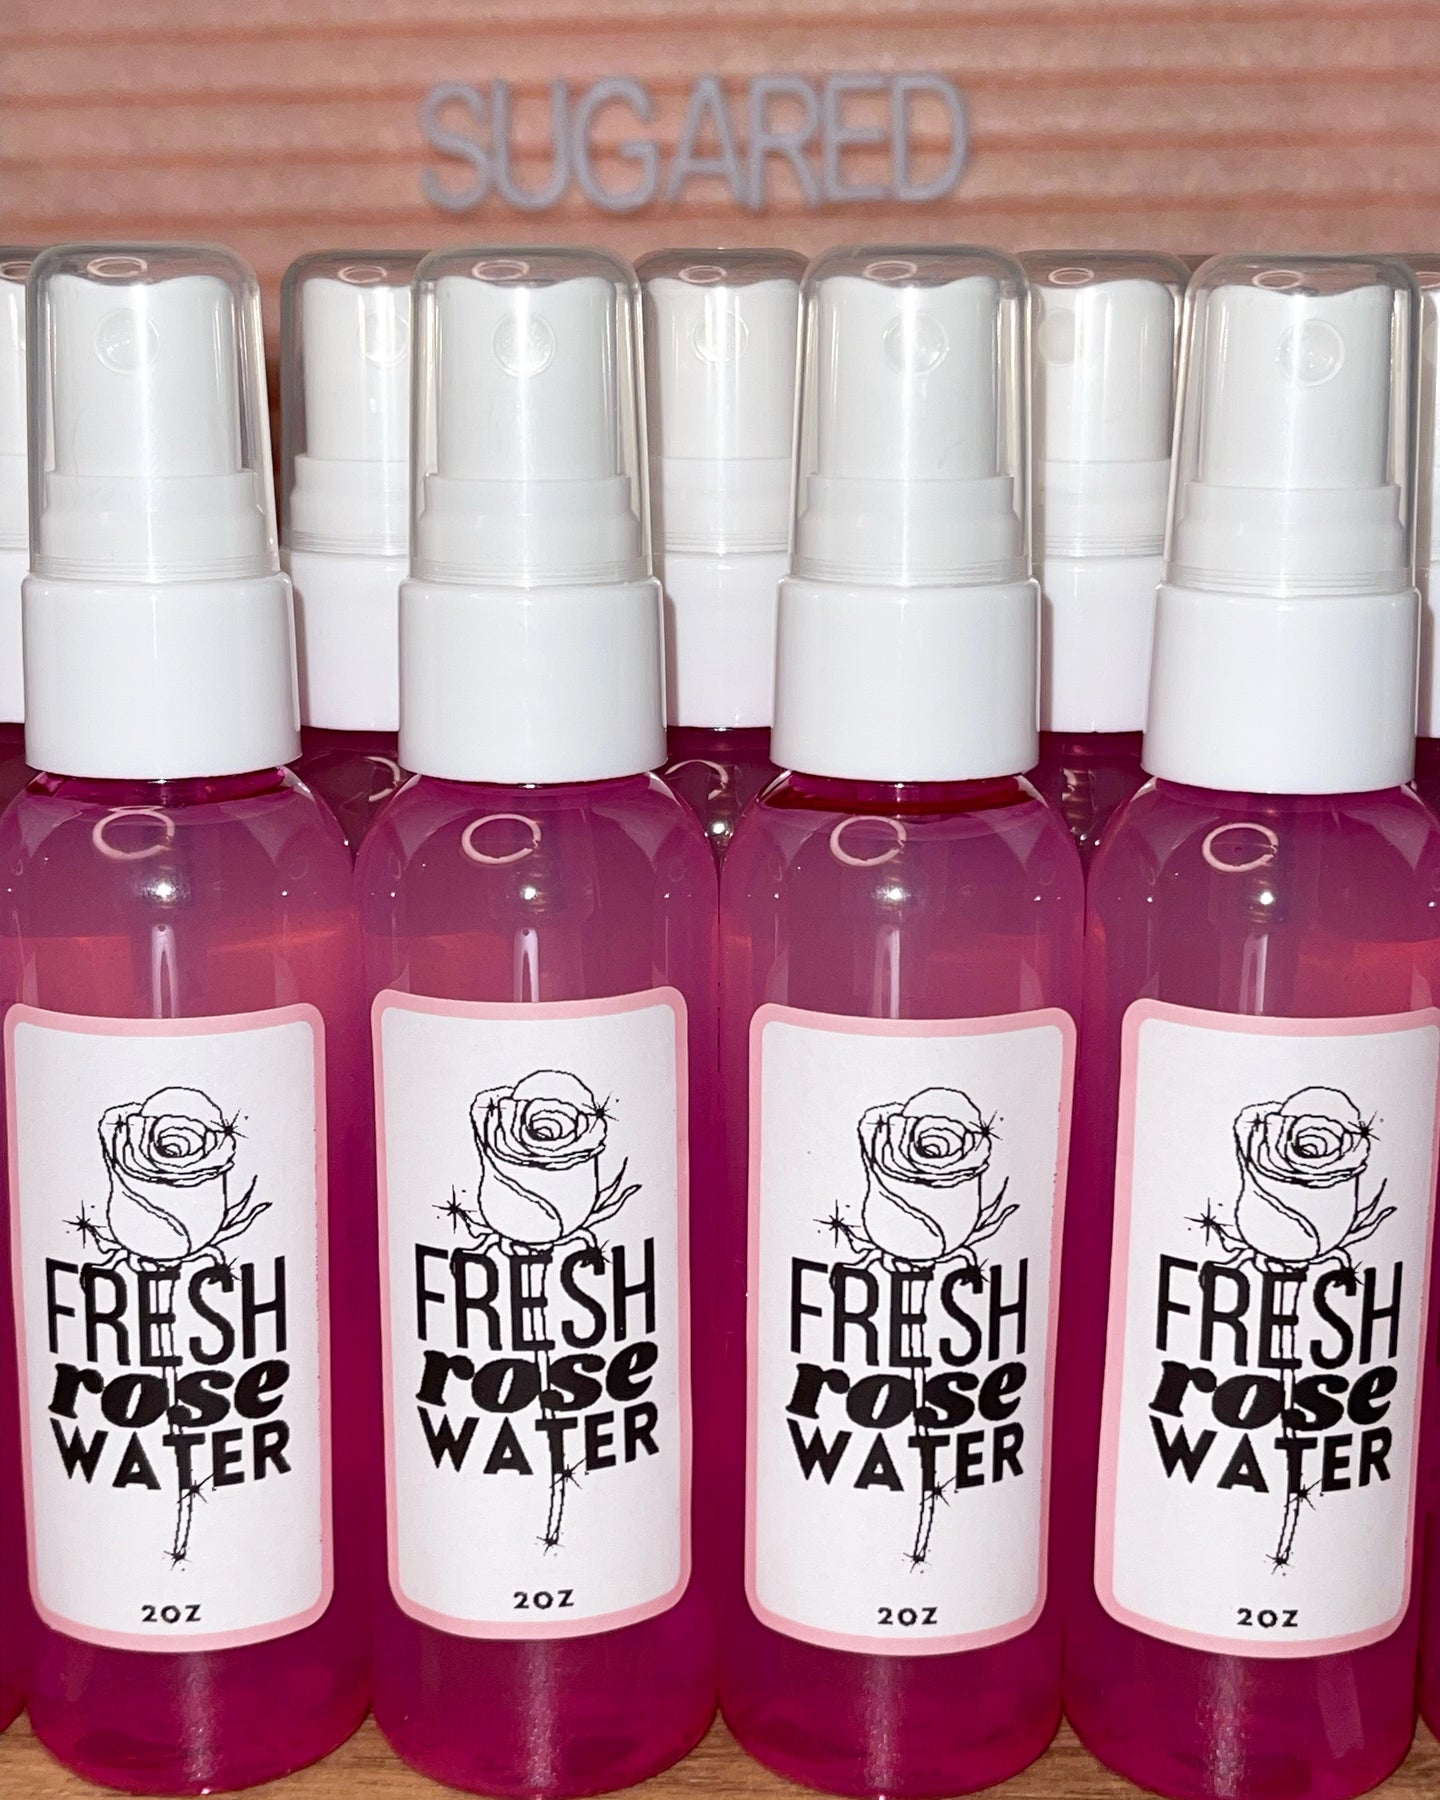 Fresh rose water